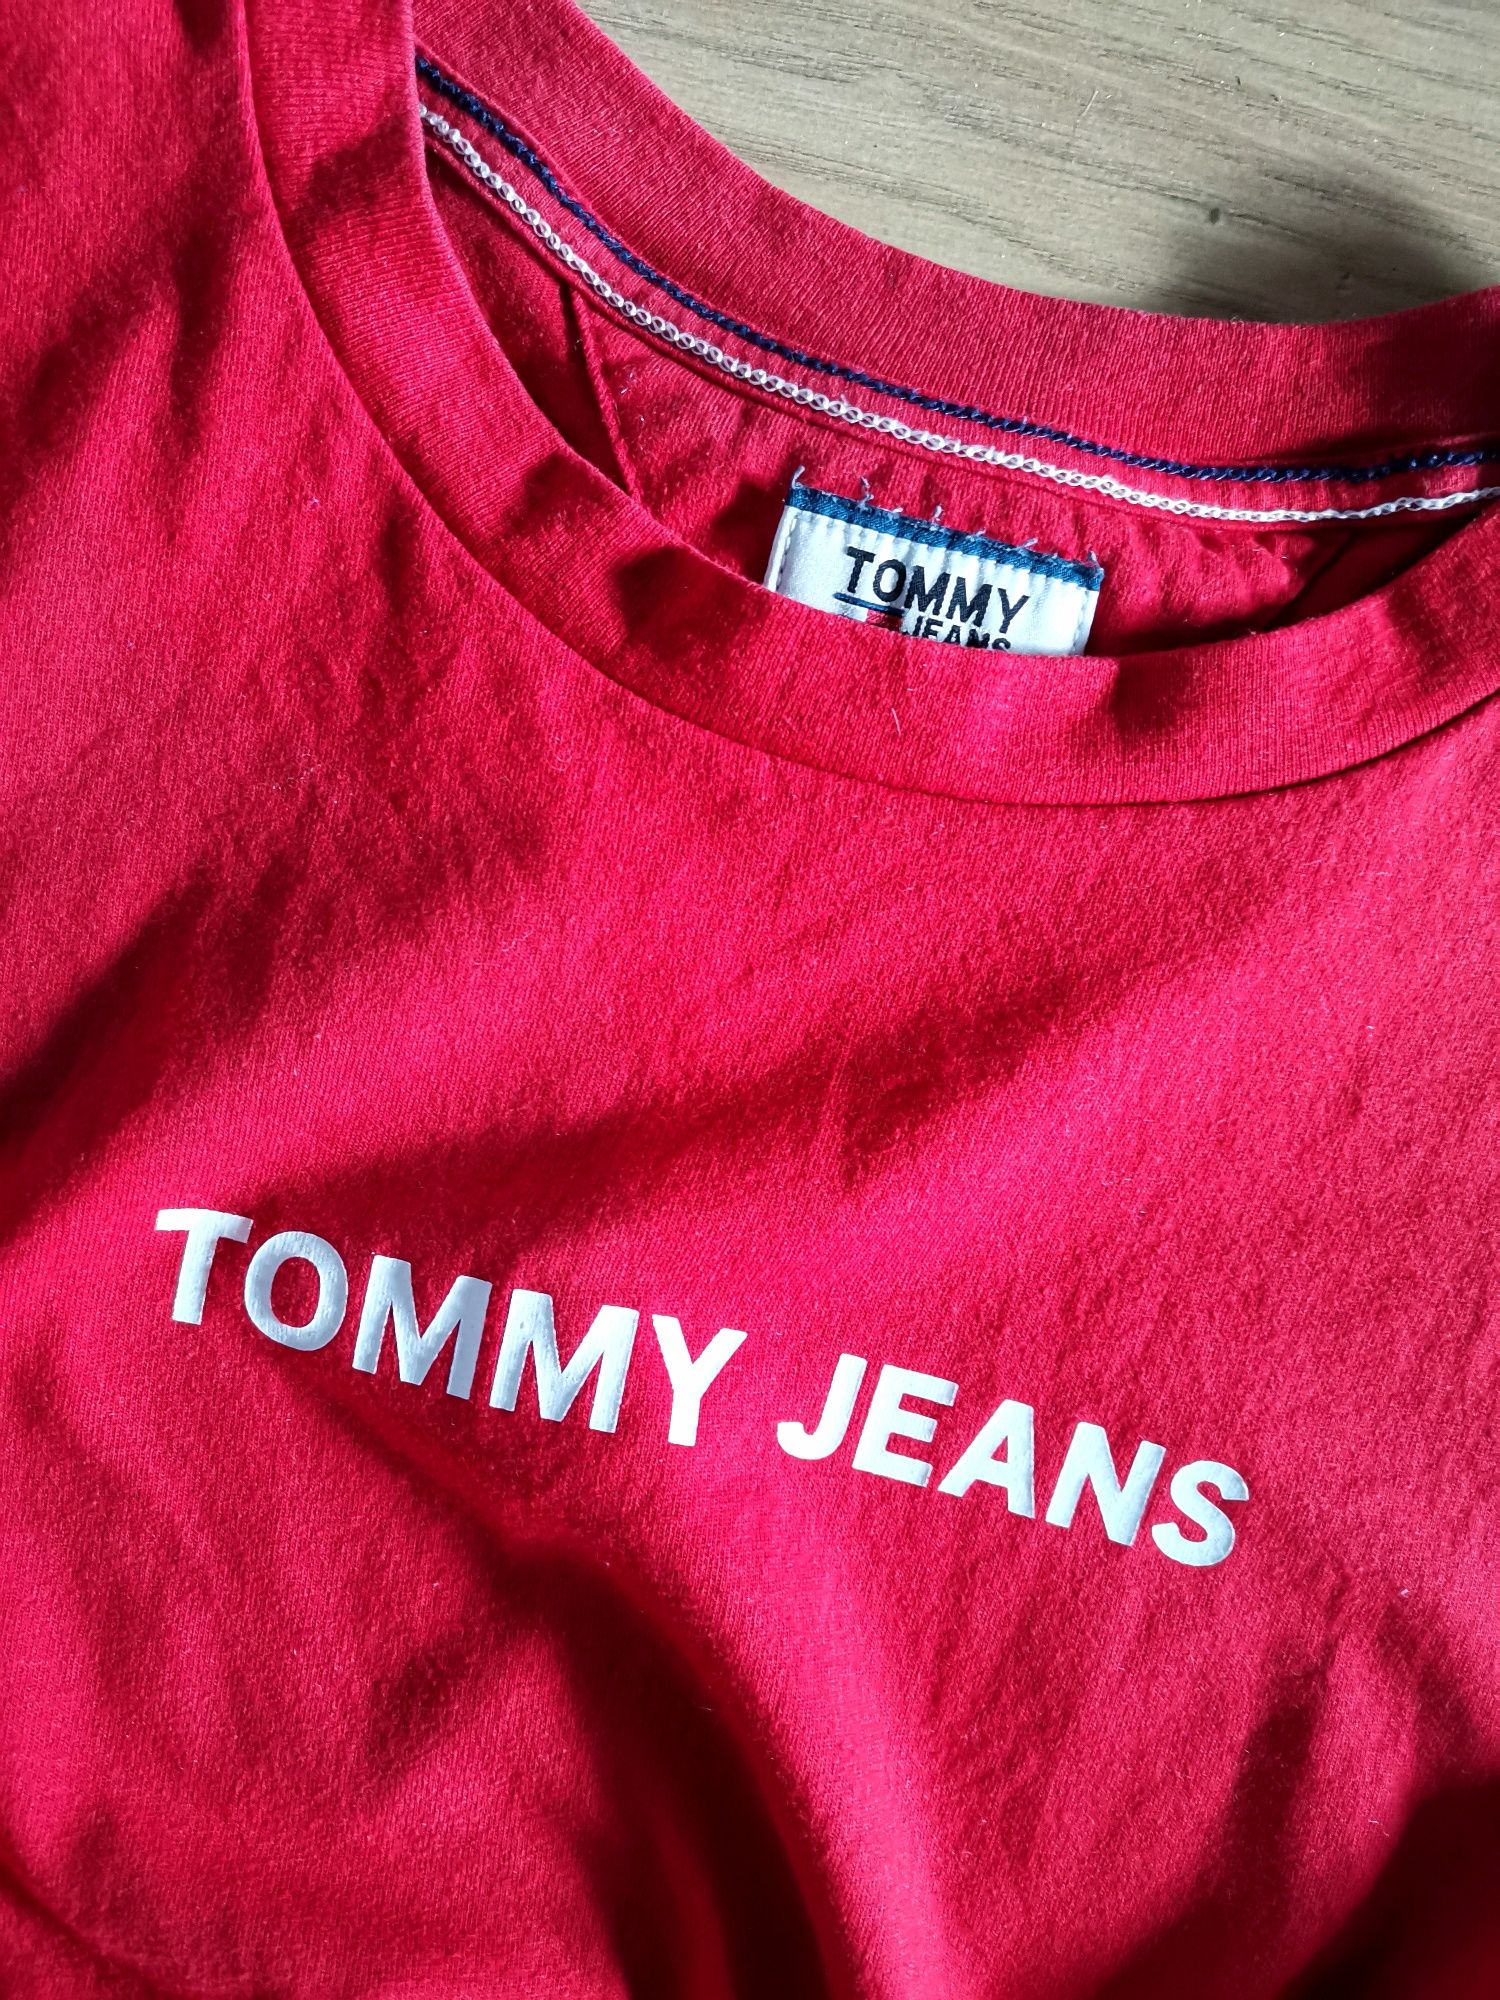 Czerwony tshirt koszulka damska Tommy Jeans krótki rękawek